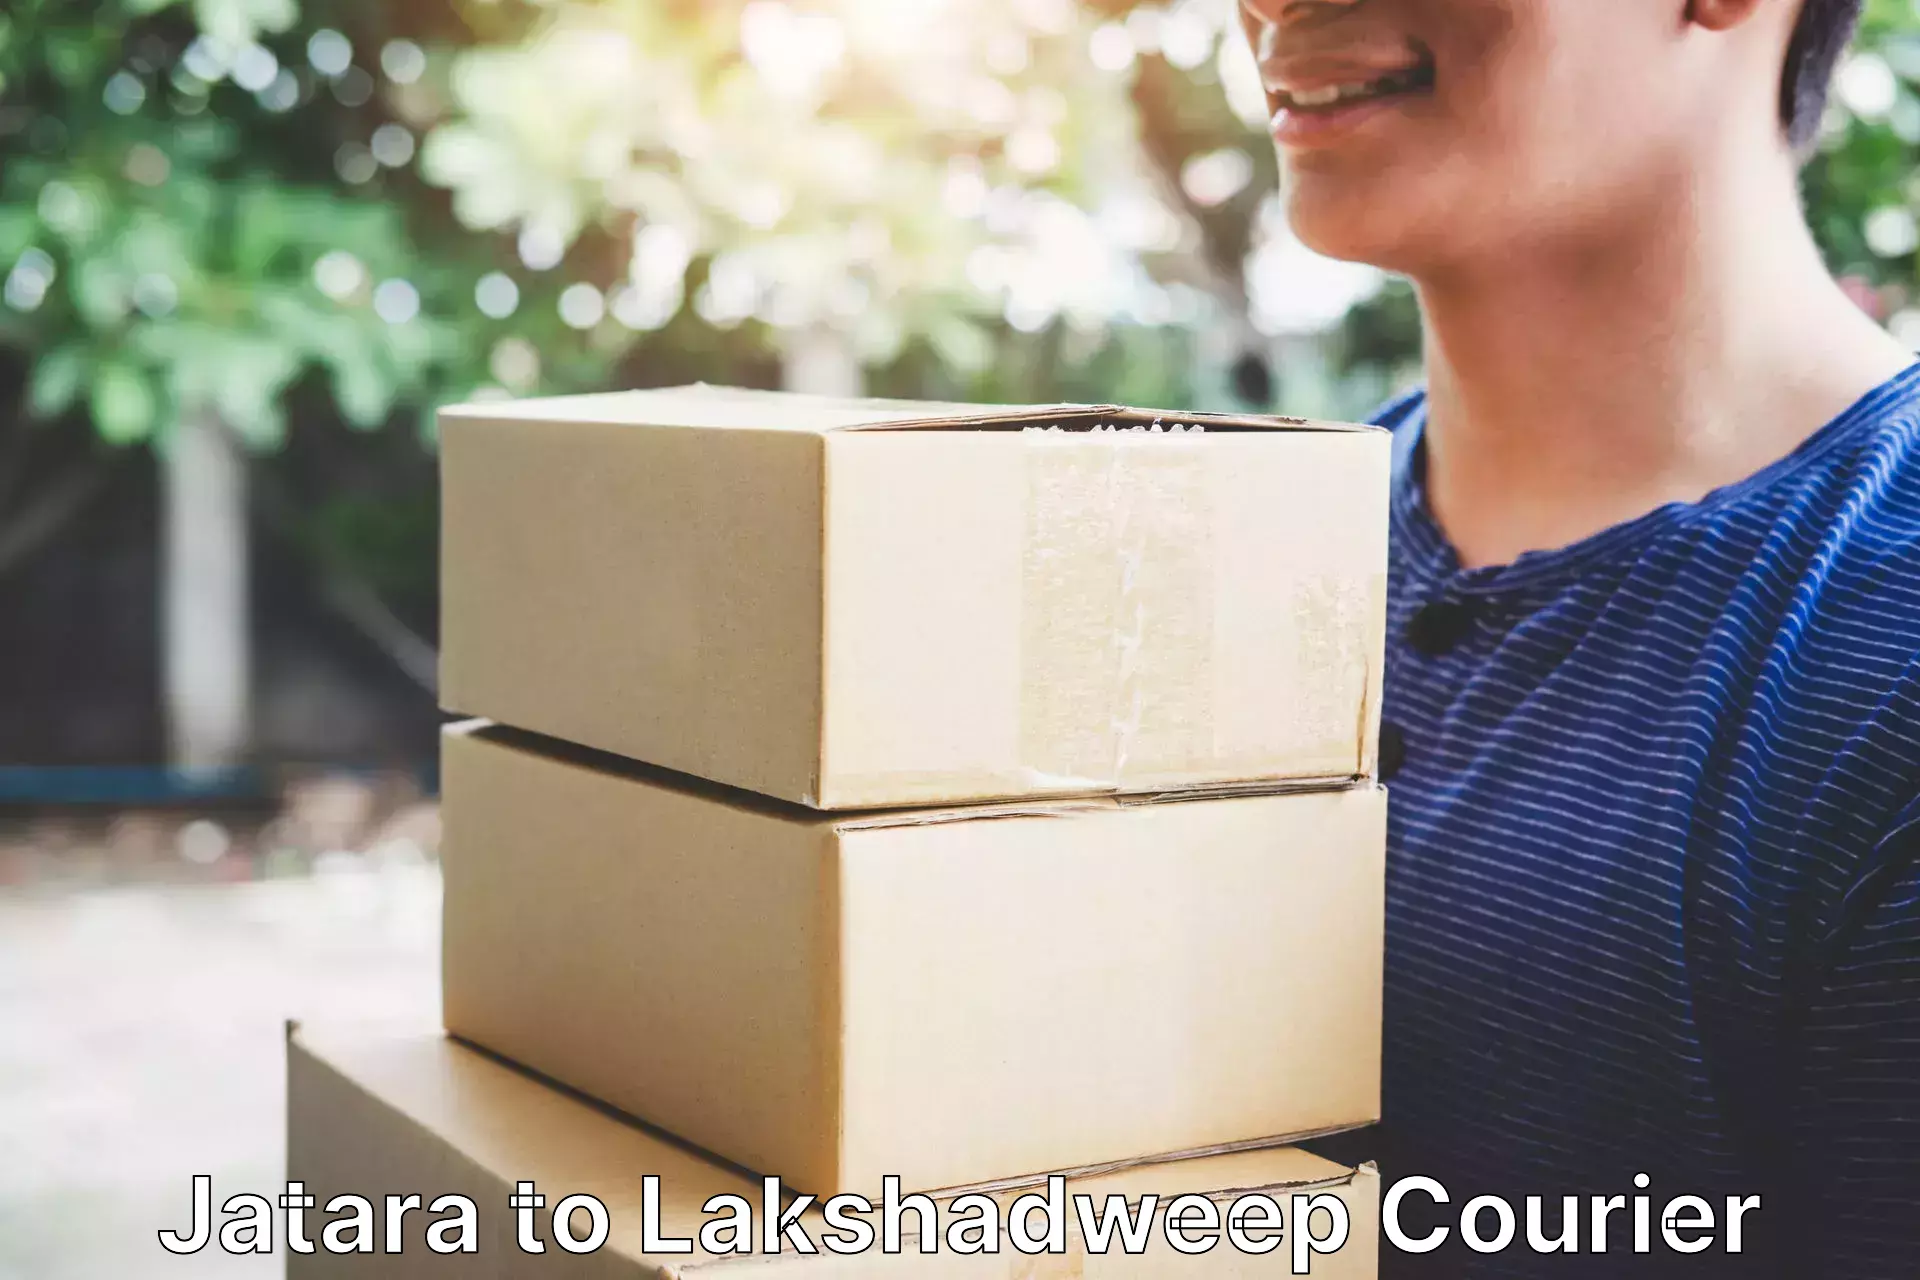 High-capacity shipping options Jatara to Lakshadweep